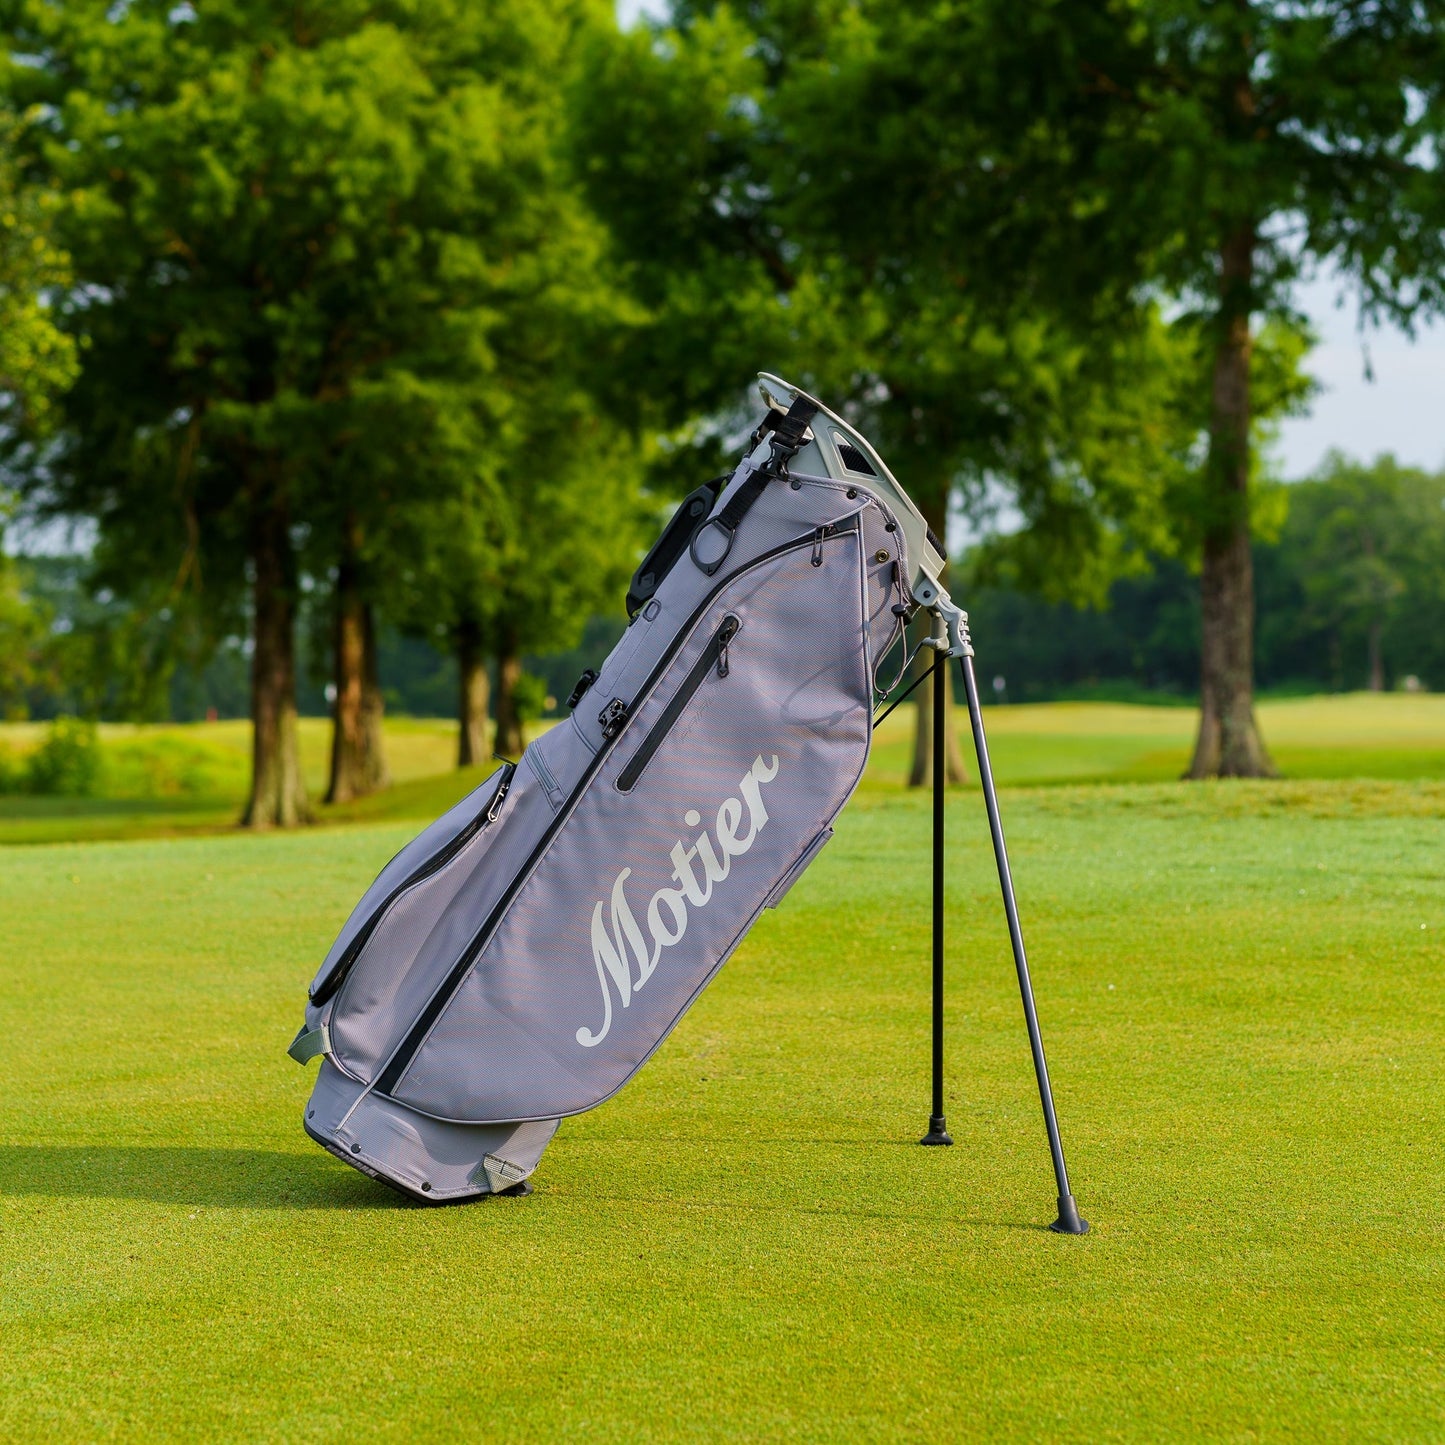 The Motier Fairway C Callaway Tour Golf Bag (Grey)